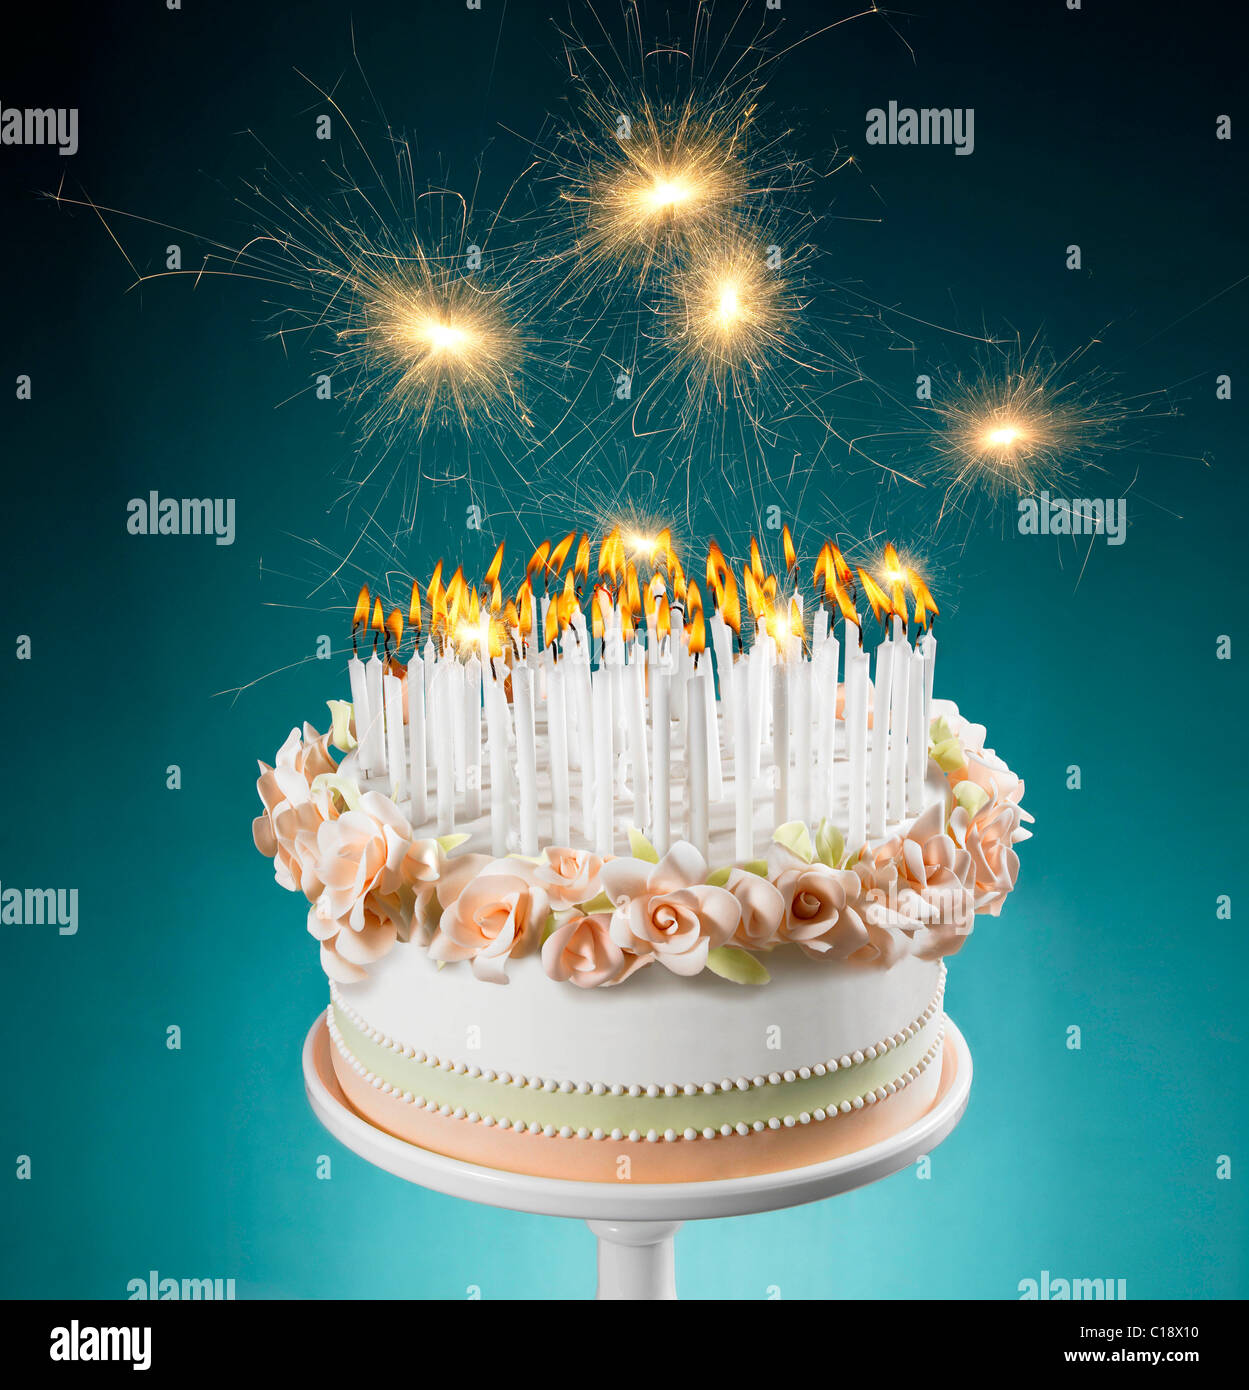 Gâteau d'anniversaire avec plein de bougies allumées Banque D'Images